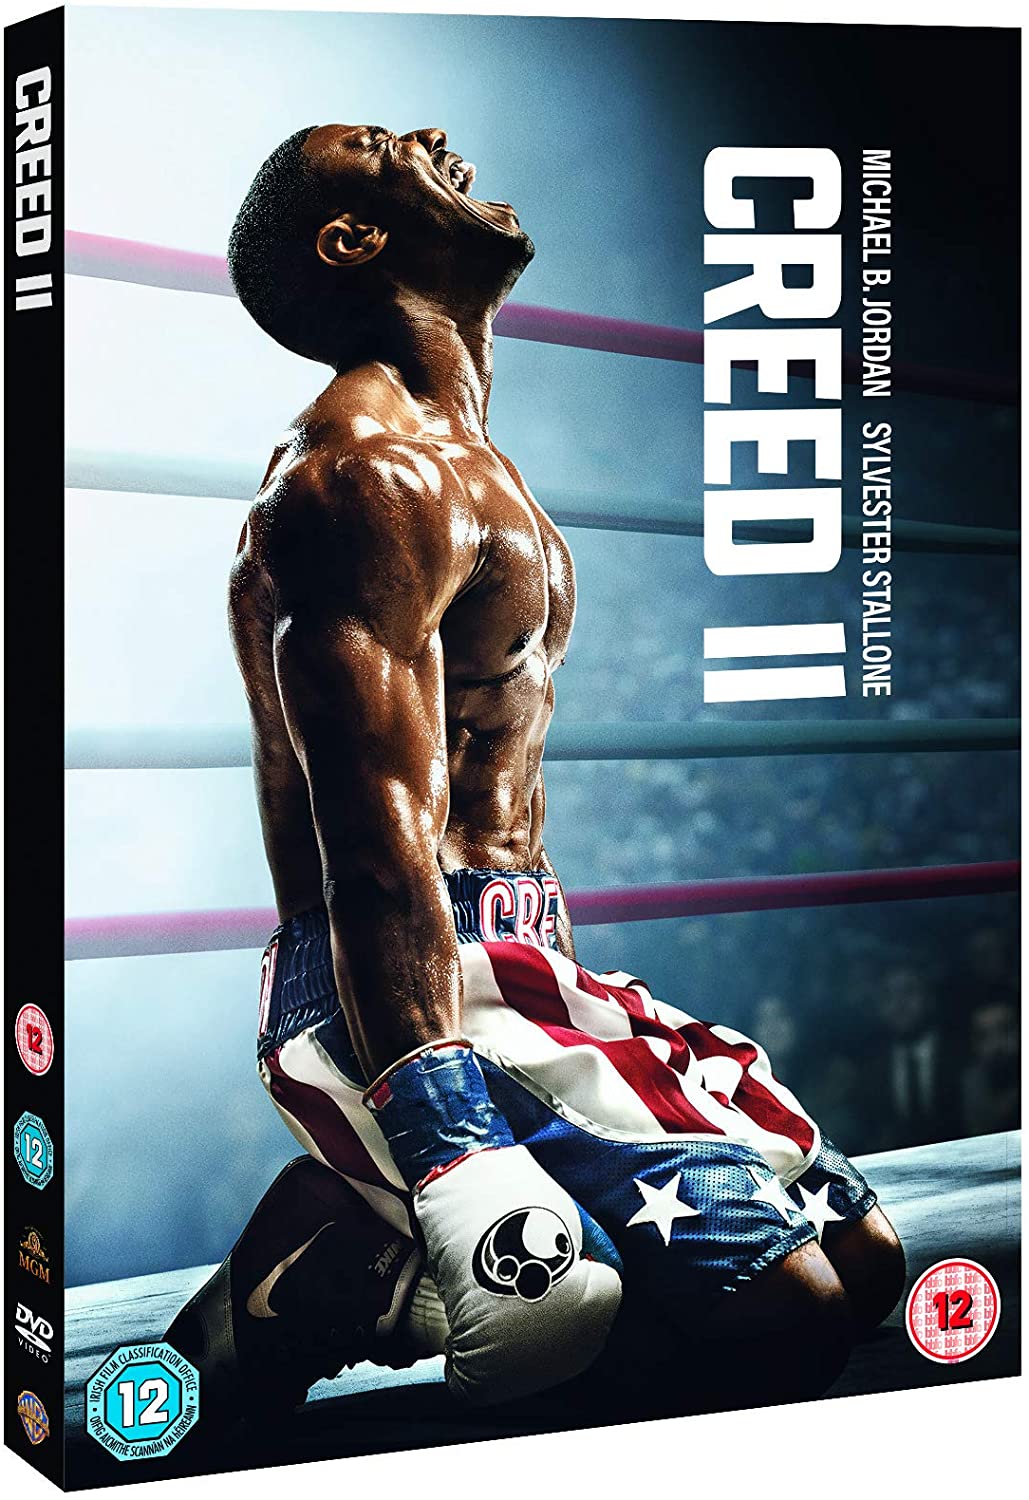 Creed II - Drama/Sport [DVD]